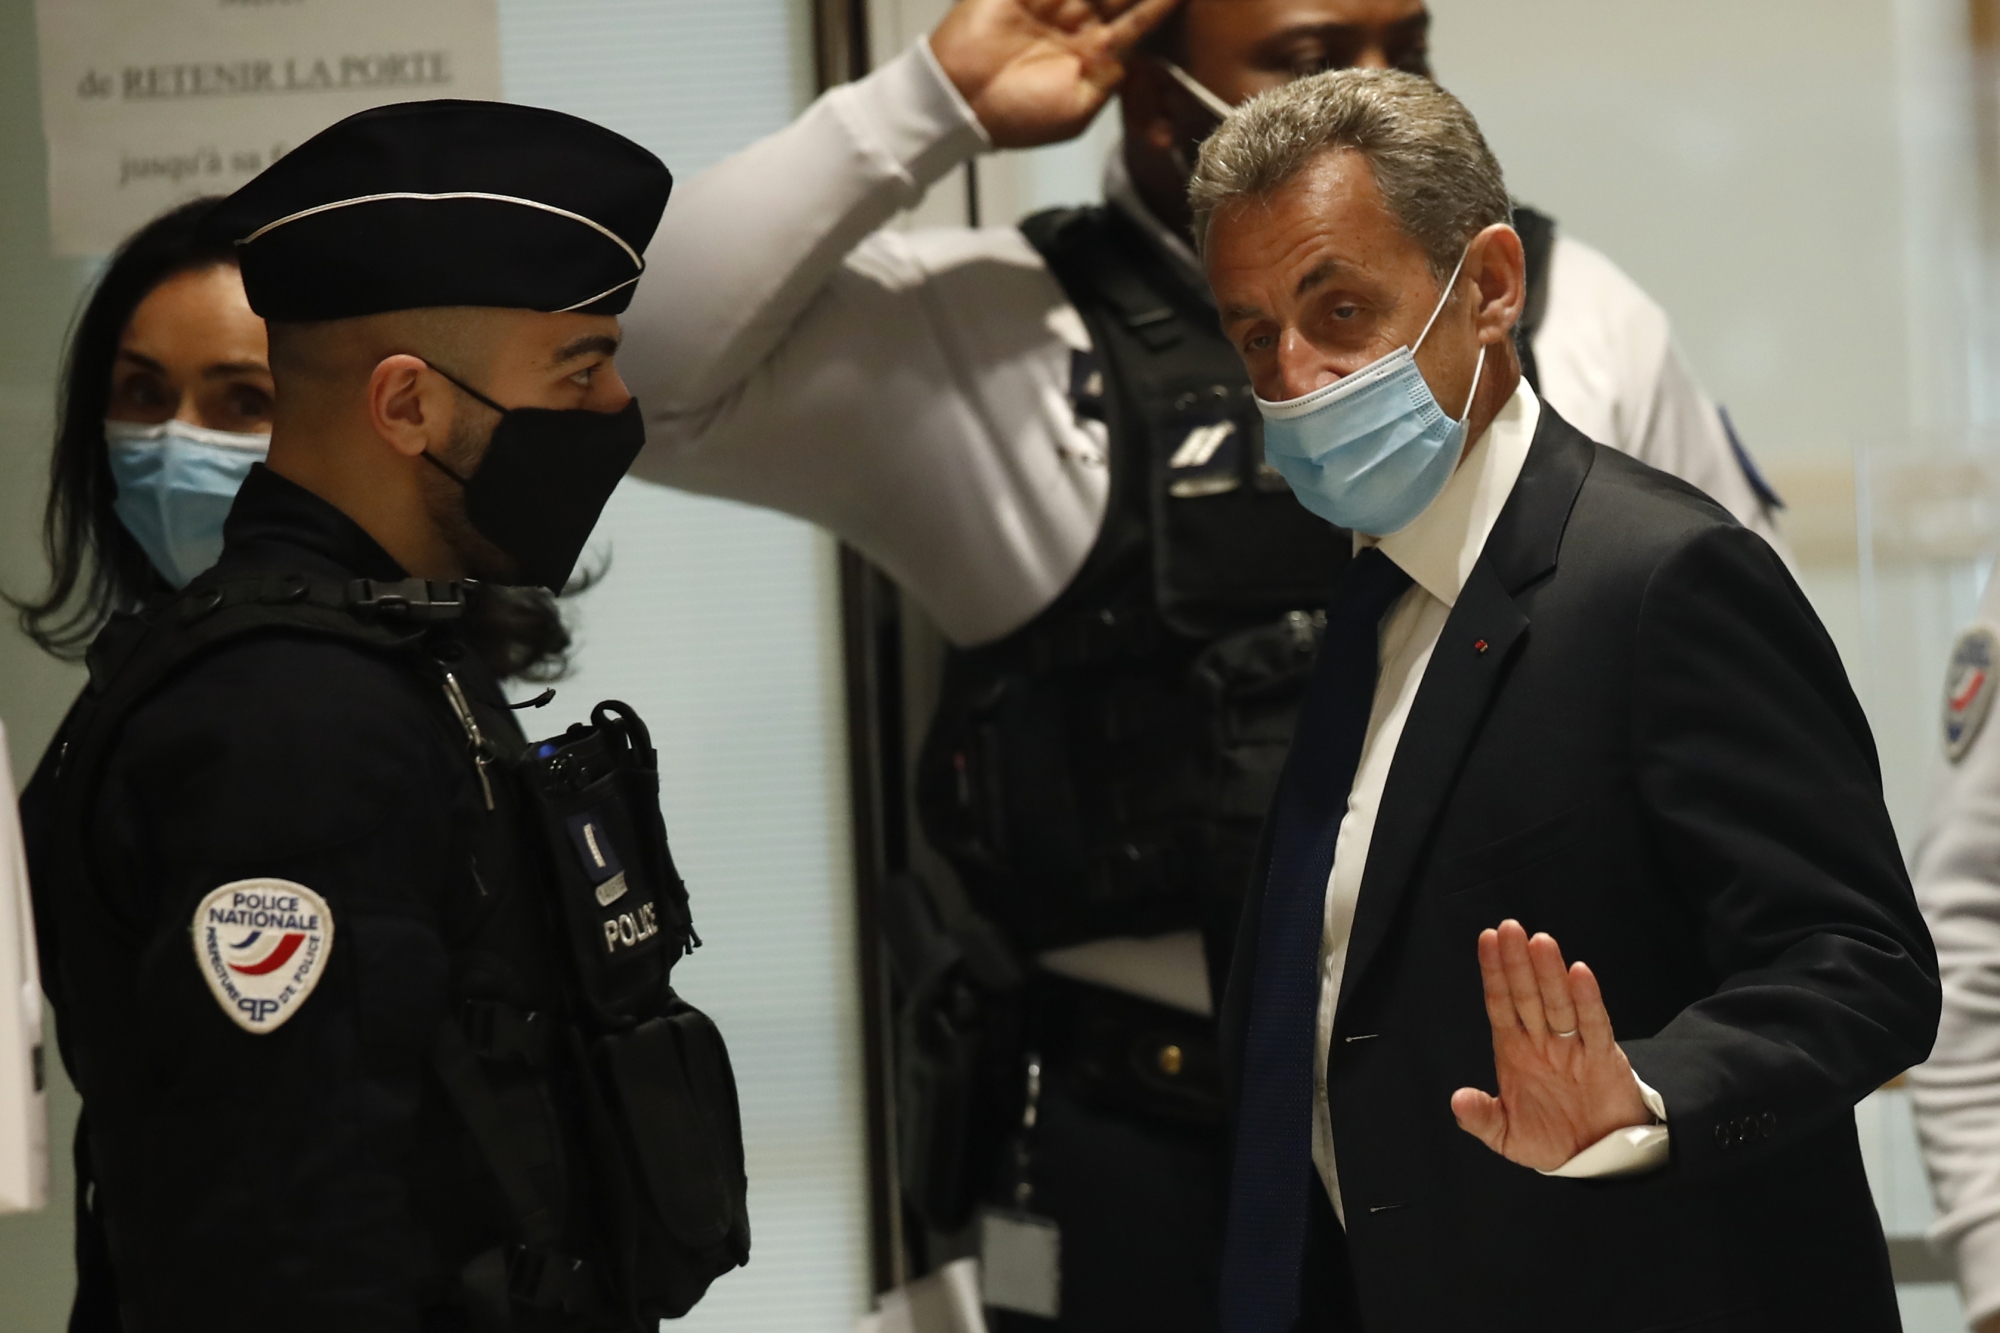 Les «complices» de Sarkozy, Gilbert Azibert et l’avocat Thierry Herzog, ont aussi été condamnés à des peines de prison, assortie pour l’avocat à une interdiction d’exercer pendant 5 ans.